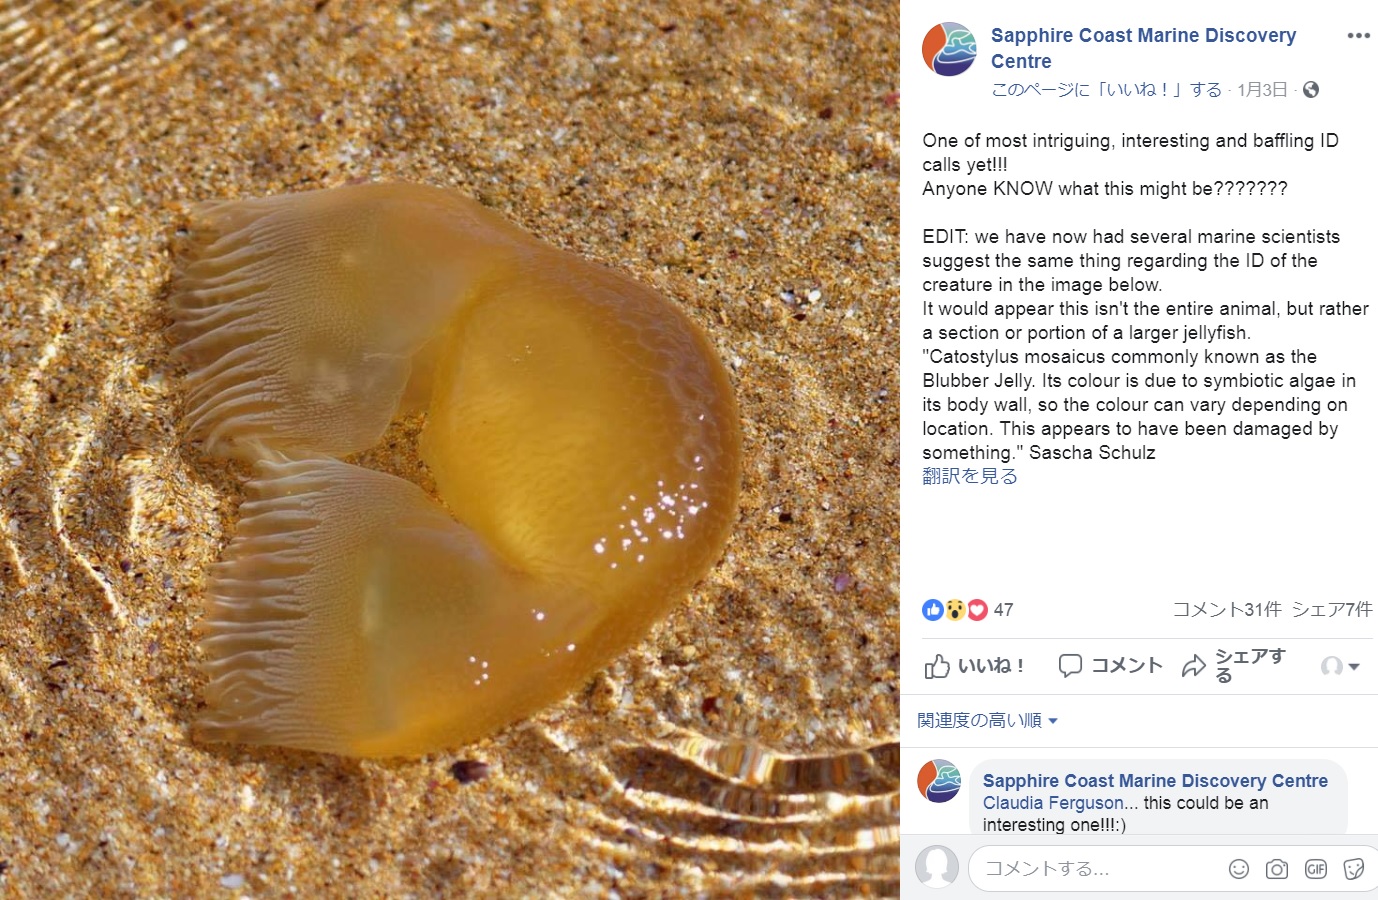 オーストラリアのニューサウスウェールズ州では2019年1月、全体がゼリー状の塊で黄色がかった不思議な生物が見つかった。ドナルド・トランプ米大統領（当時）の“部分かつら”では？と話題となった（画像は『Sapphire Coast Marine Discovery Centre　2019年1月3日付Facebook「One of most intriguing, interesting and baffling ID calls yet!!!」』のスクリーンショット）